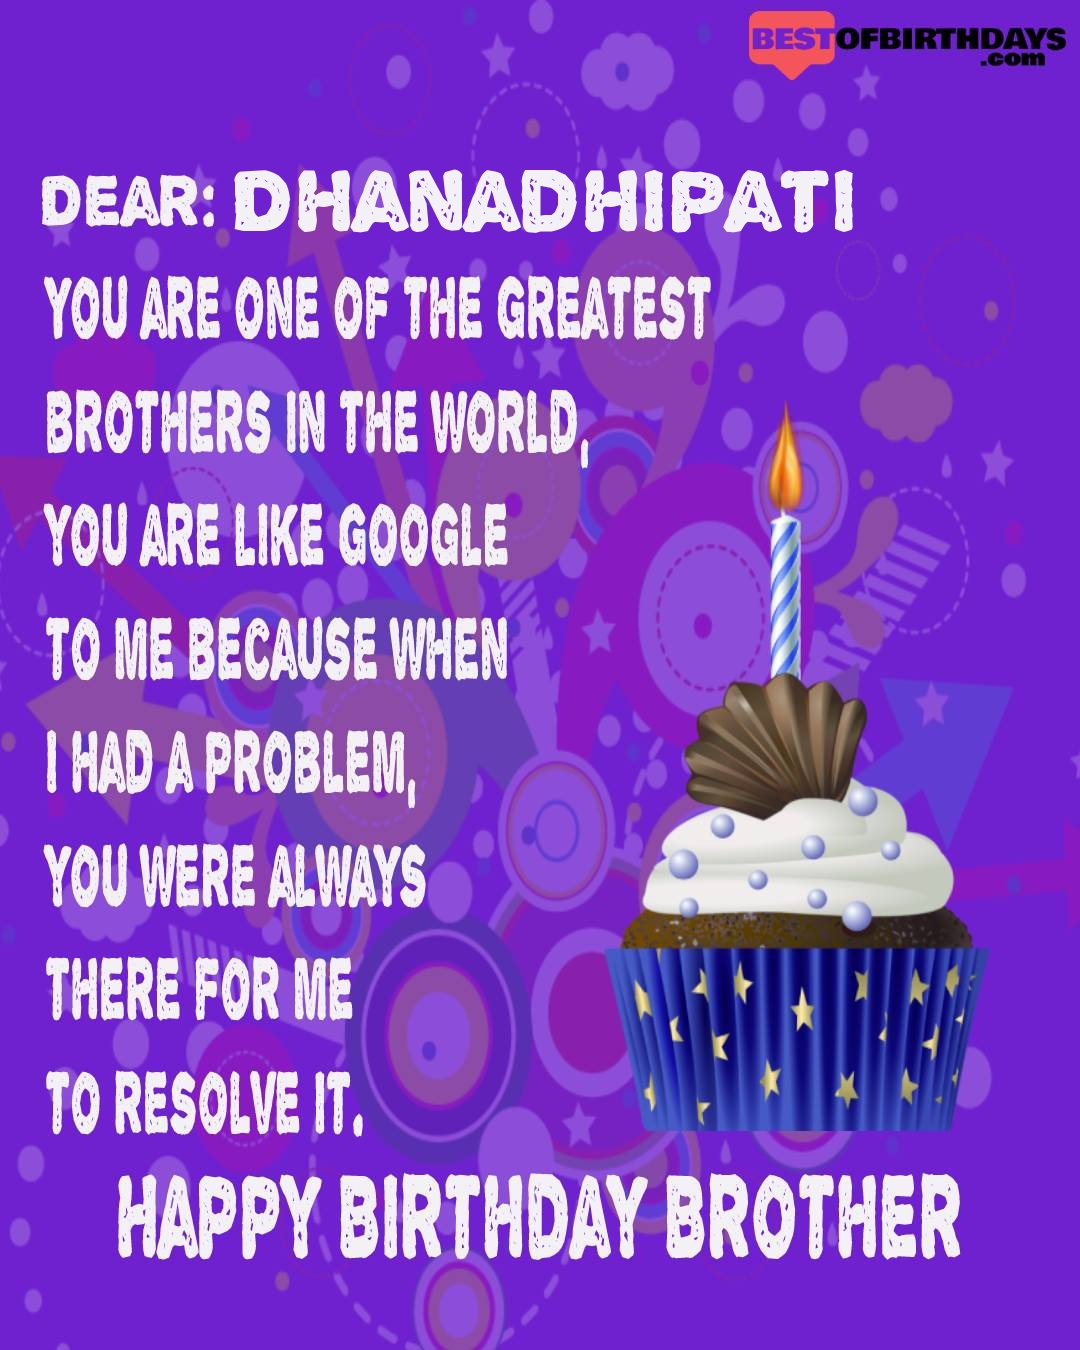 Happy birthday dhanadhipati bhai brother bro